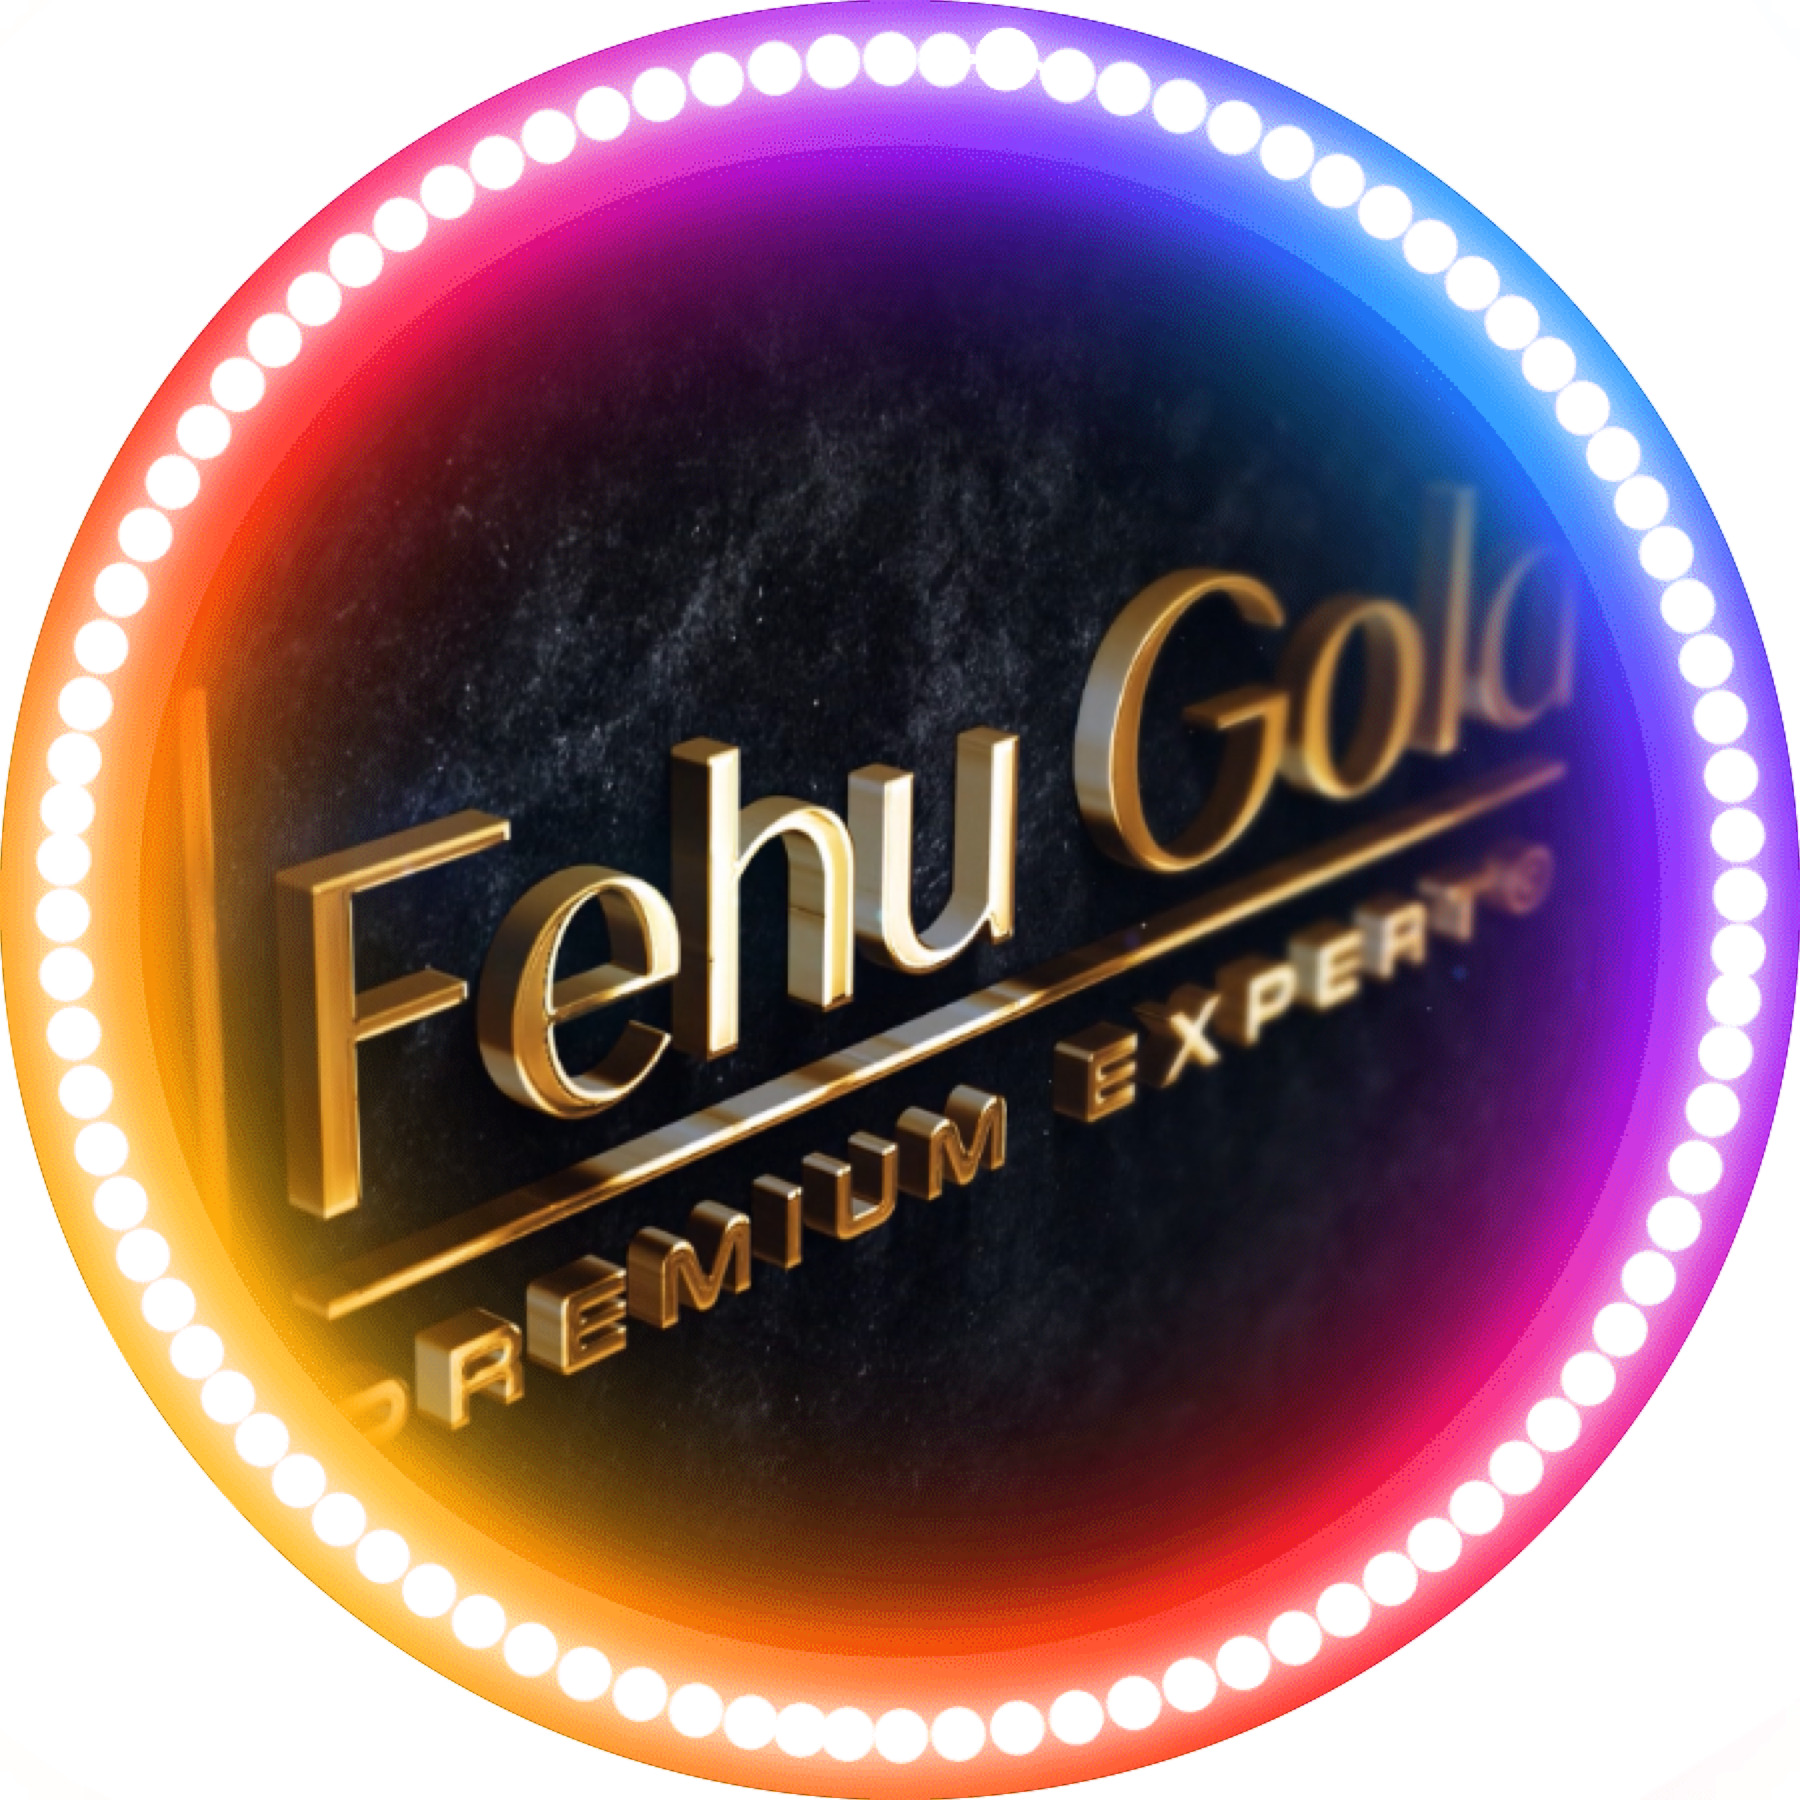 Вы сейчас просматриваете Expert FX Fehu Gold (channel)